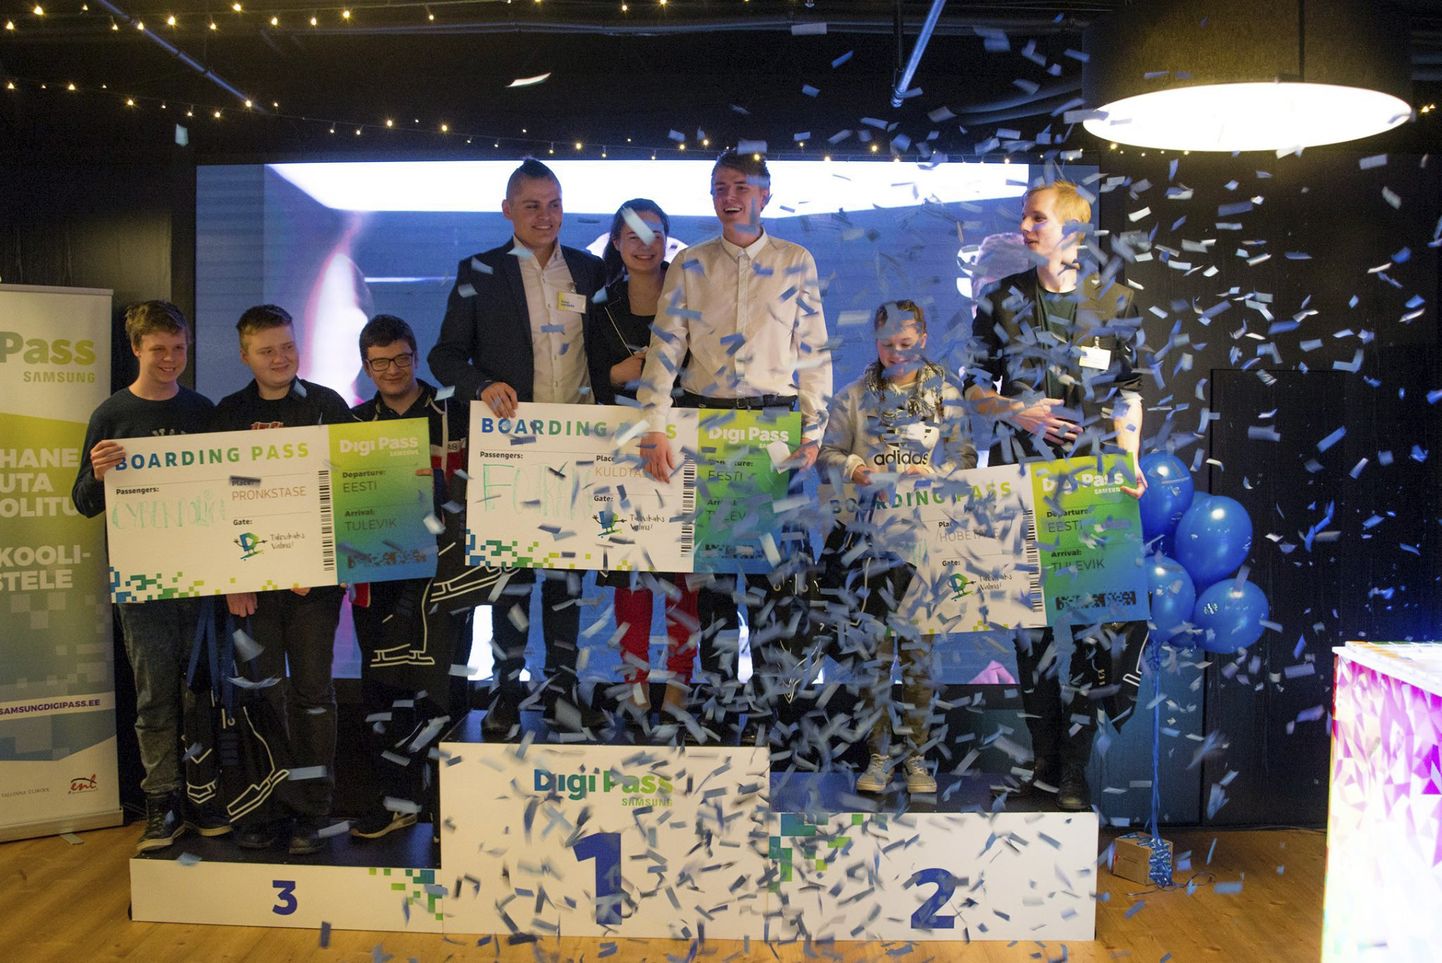 Võidukas meeskond FCQ Trans, kuhu kuulusid Kevin Varzin, Diana Piilsaare ja Tanel Arumäe Rakvere ametikoolist, valiti parimaks äpivõistlusel DigiPass.